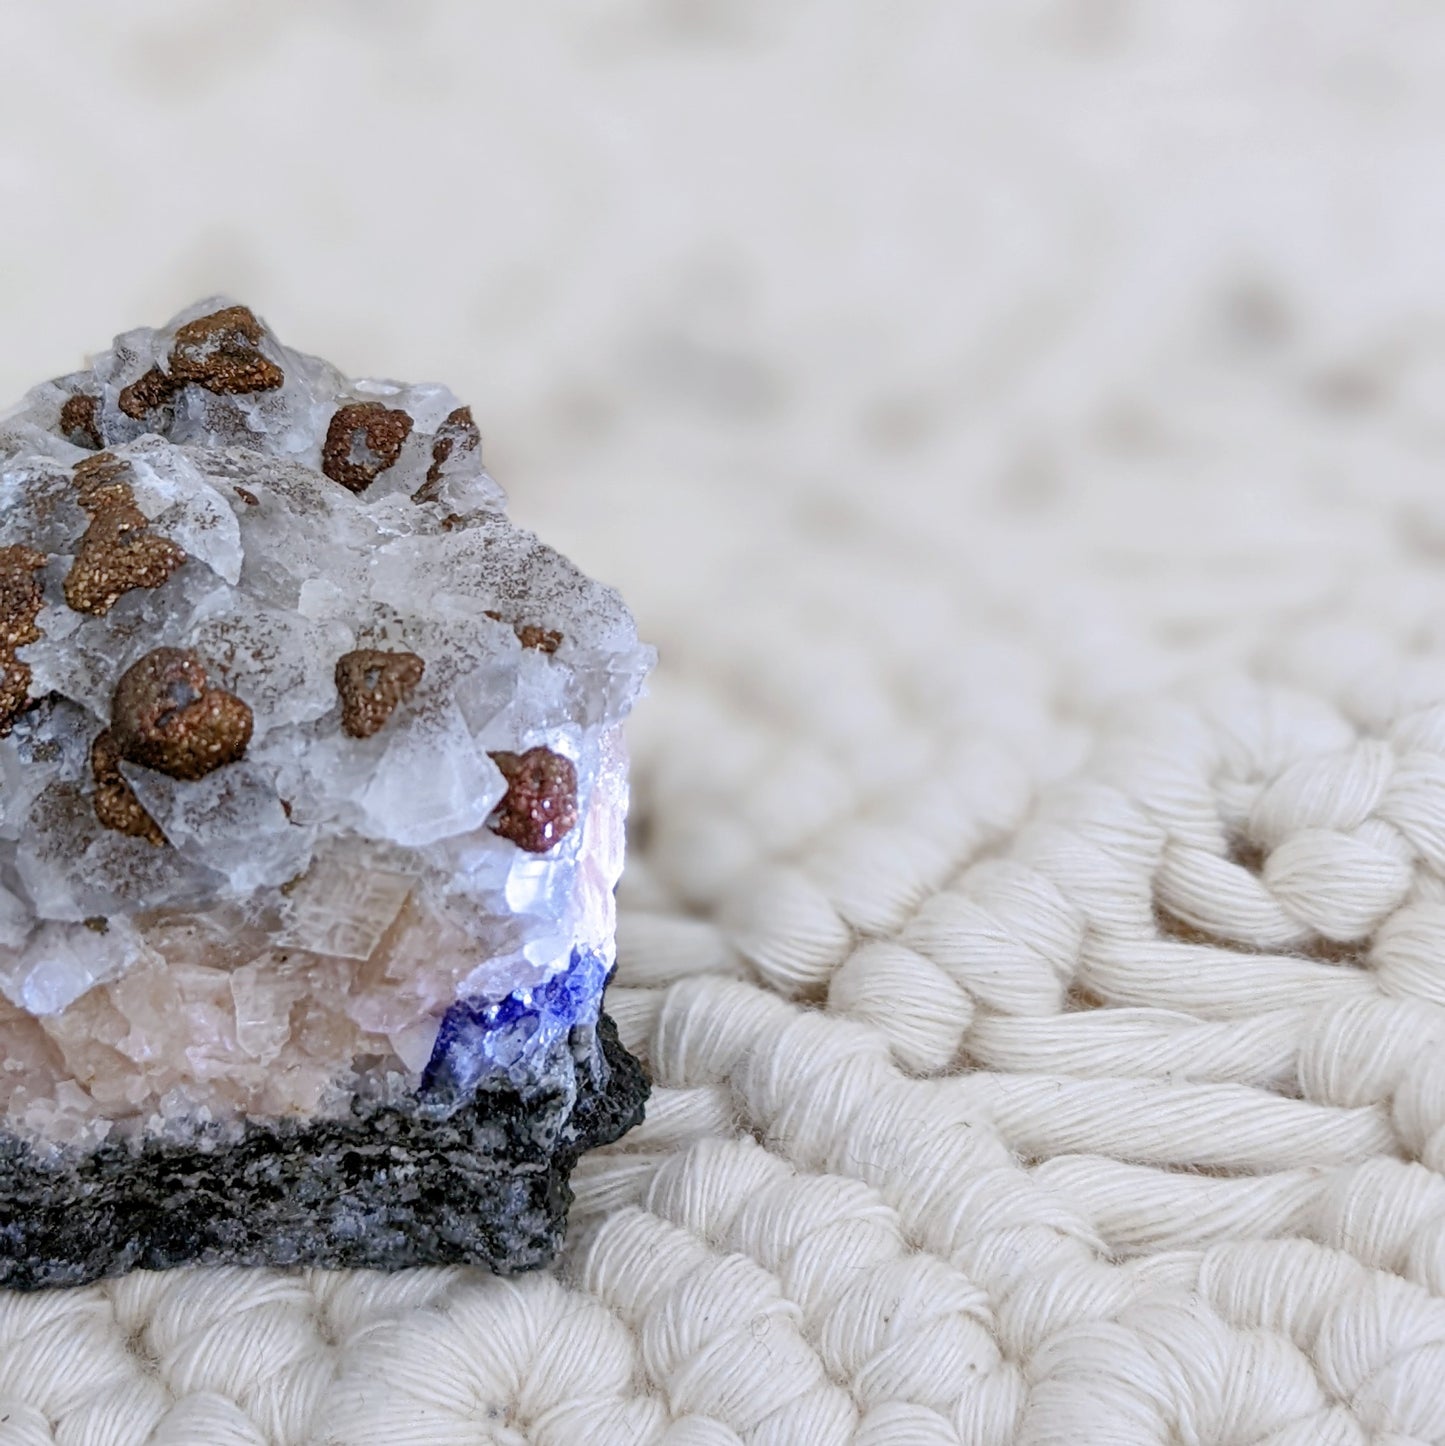 [CA01] Calcite with Pyrite and Purple Fluorite 方解黃鐵紫螢石共生